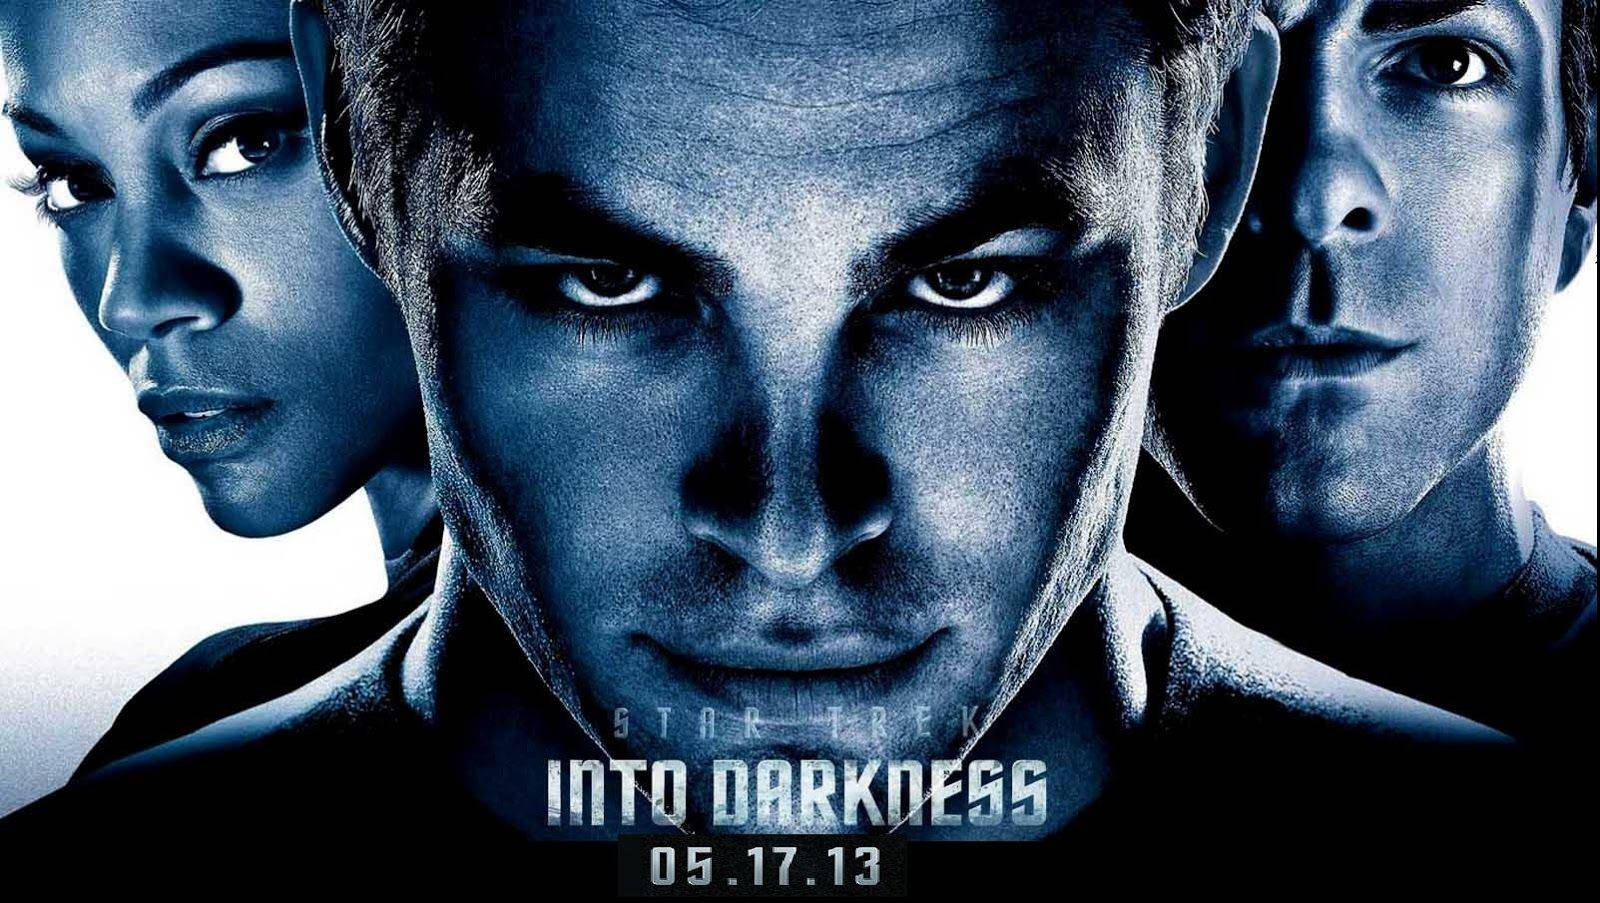 Star Trek Into Darkness Portrait Poster Background